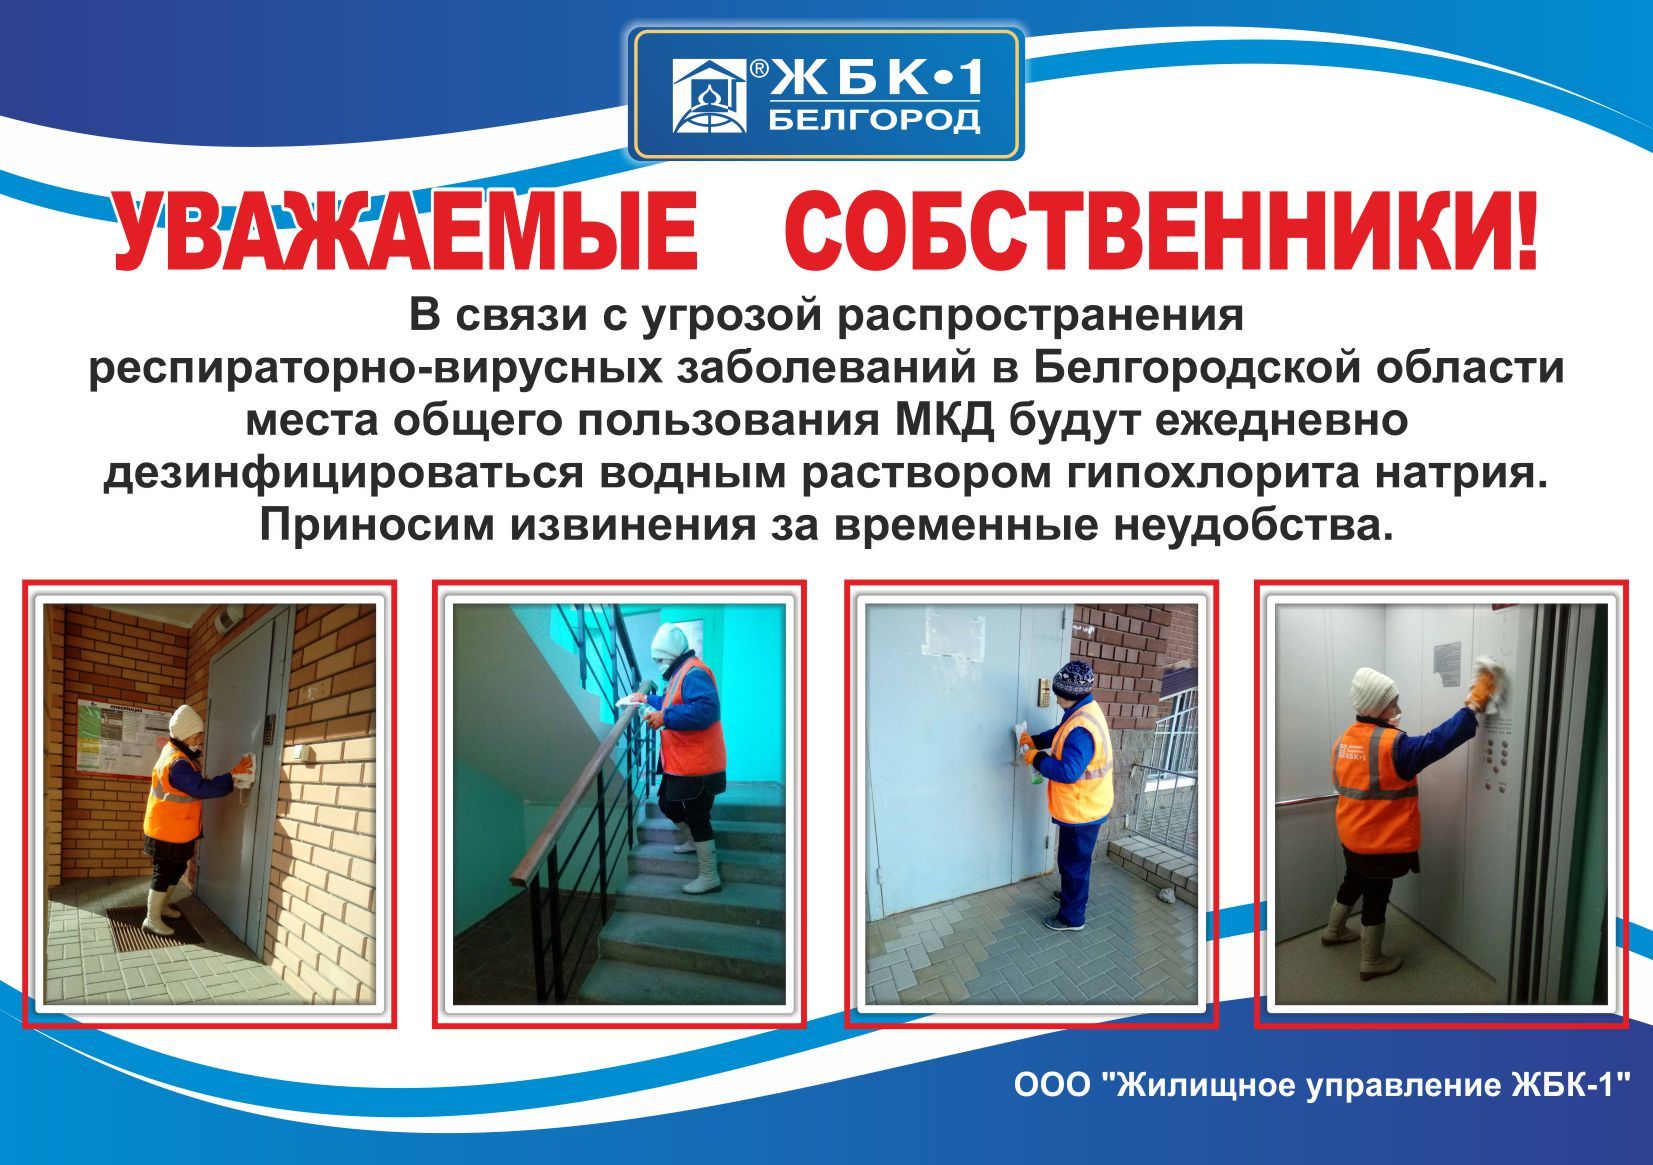 Объявление для собственников квартир в многоквартирных домах, которые обслуживает  ООО «Жилищное управление ЖБК-1»